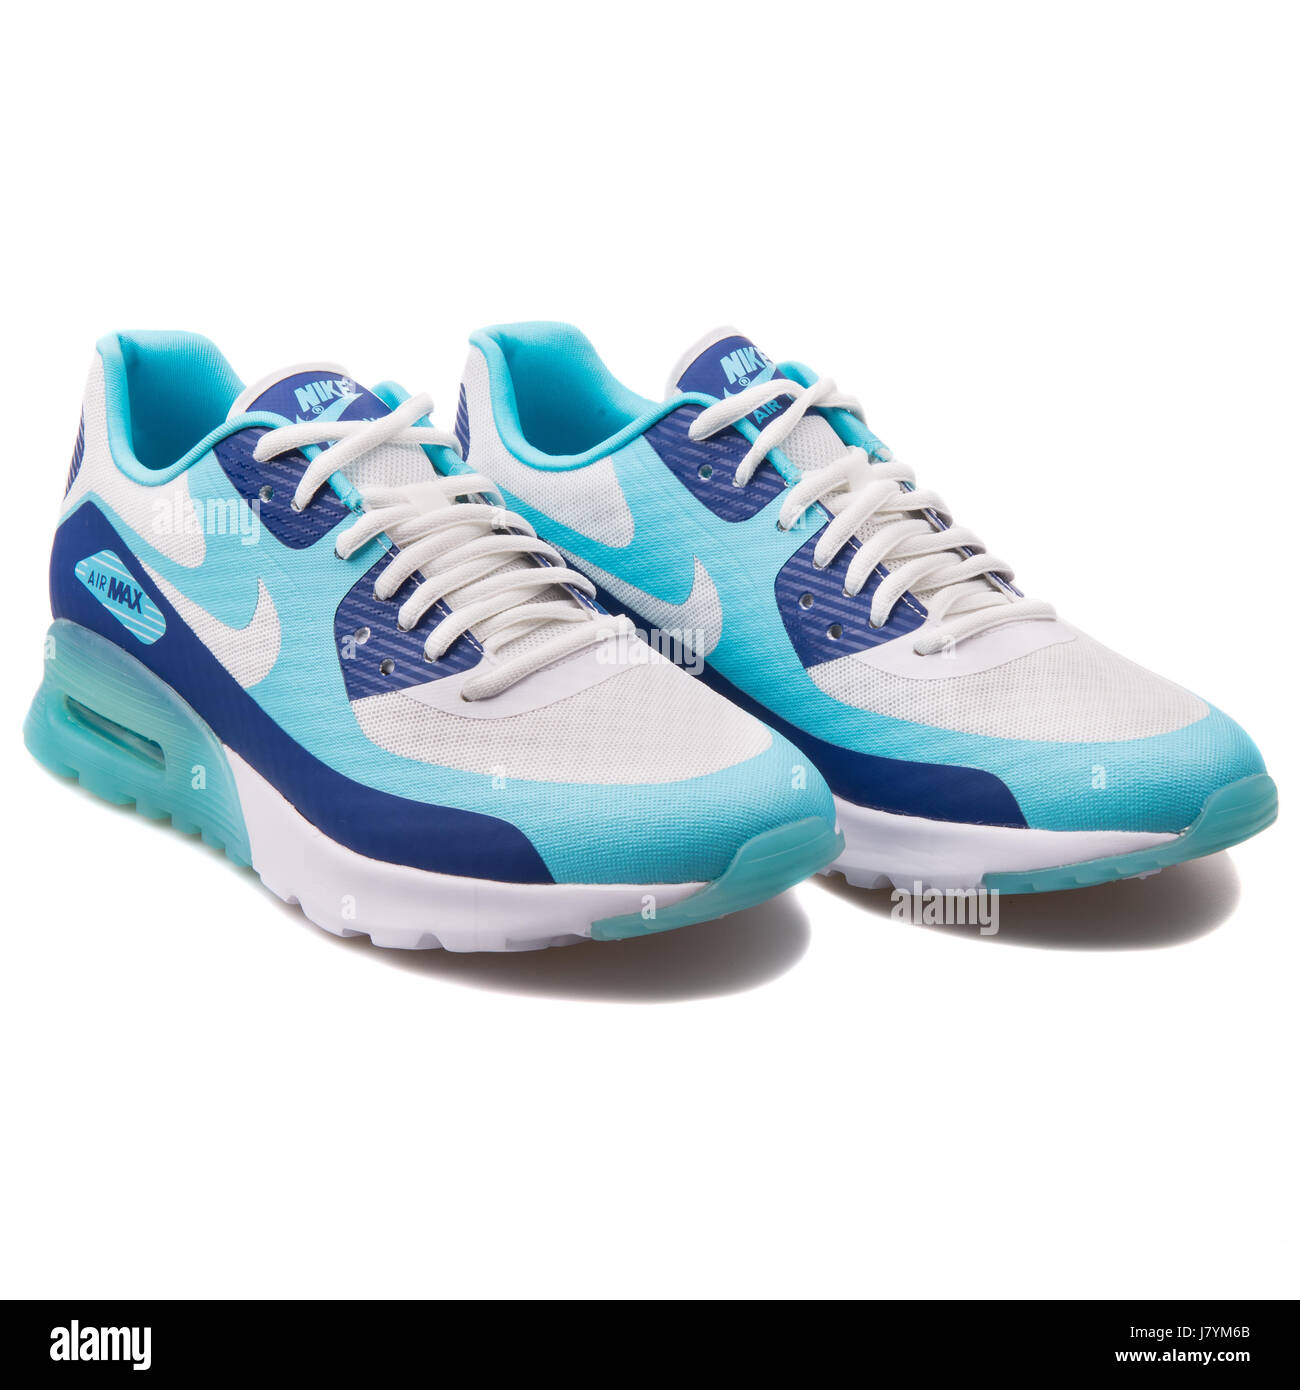 Nike Air Max 90 hombres azules esenciales zapatillas deportivas -  537384-411 Fotografía de stock - Alamy